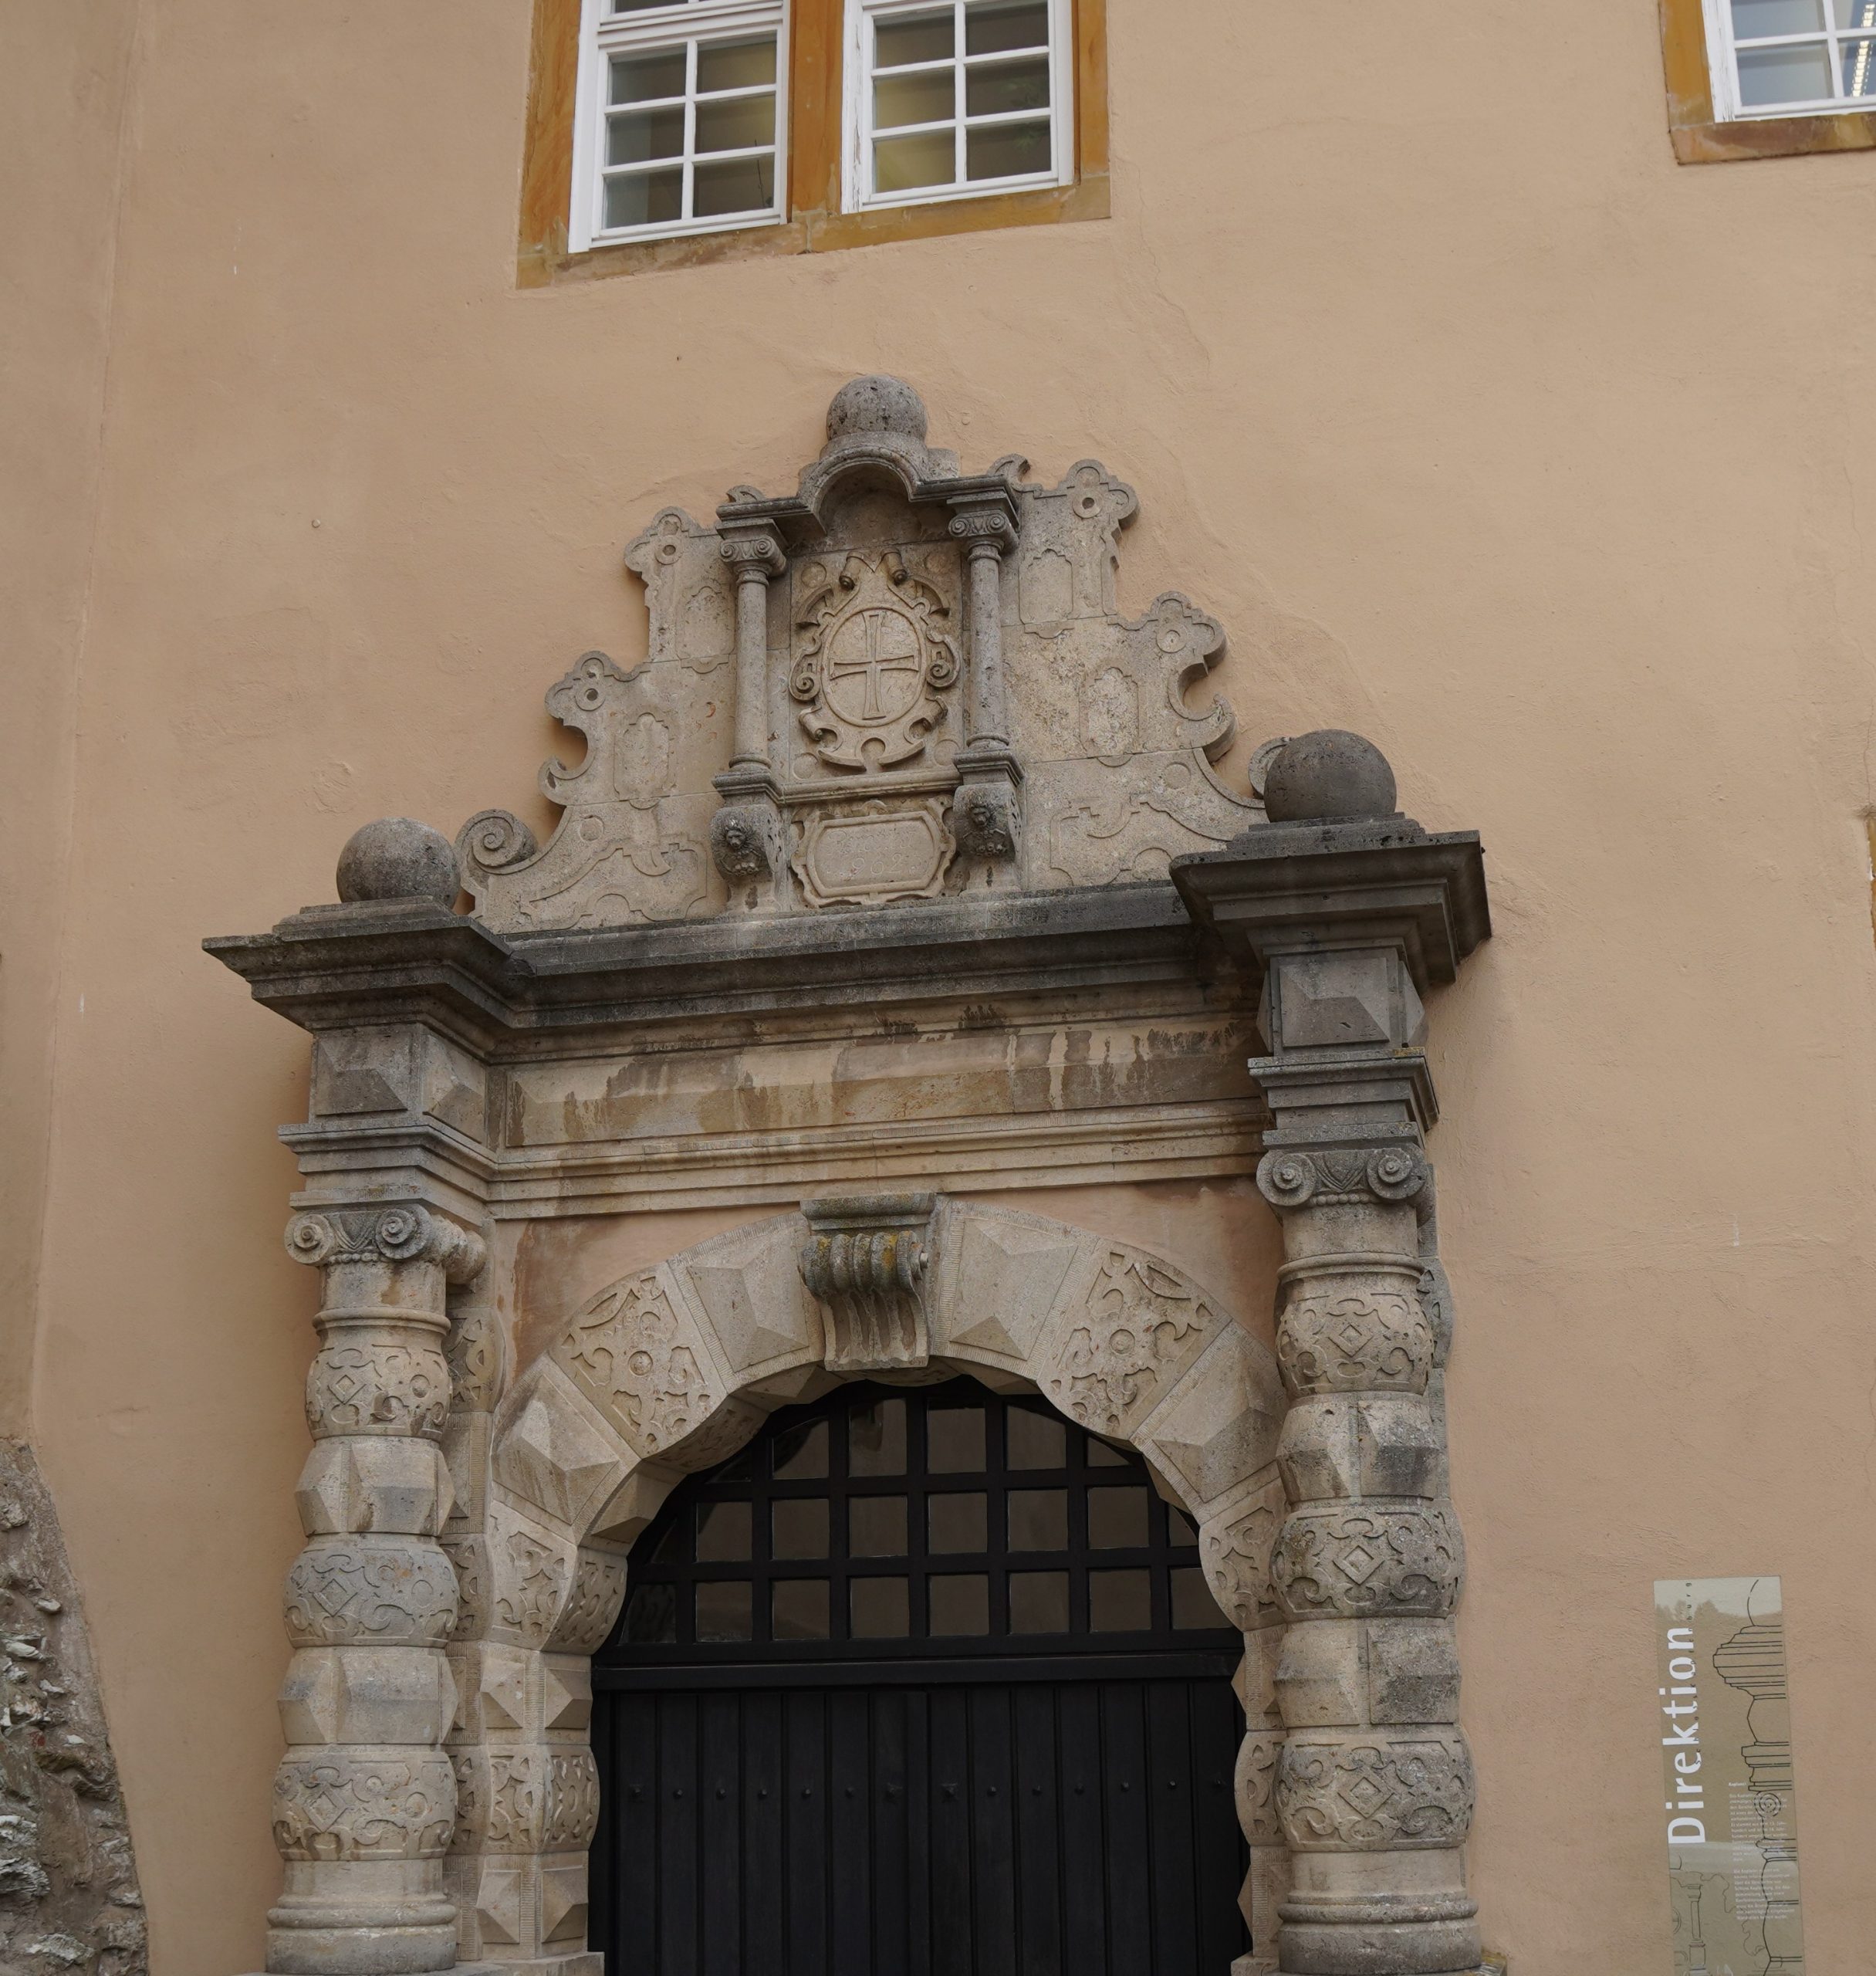 Das Bild zeigt ein Portal des Schlosses "Kapfenburg", an dem ein Deutschordenskreuz angebracht ist.